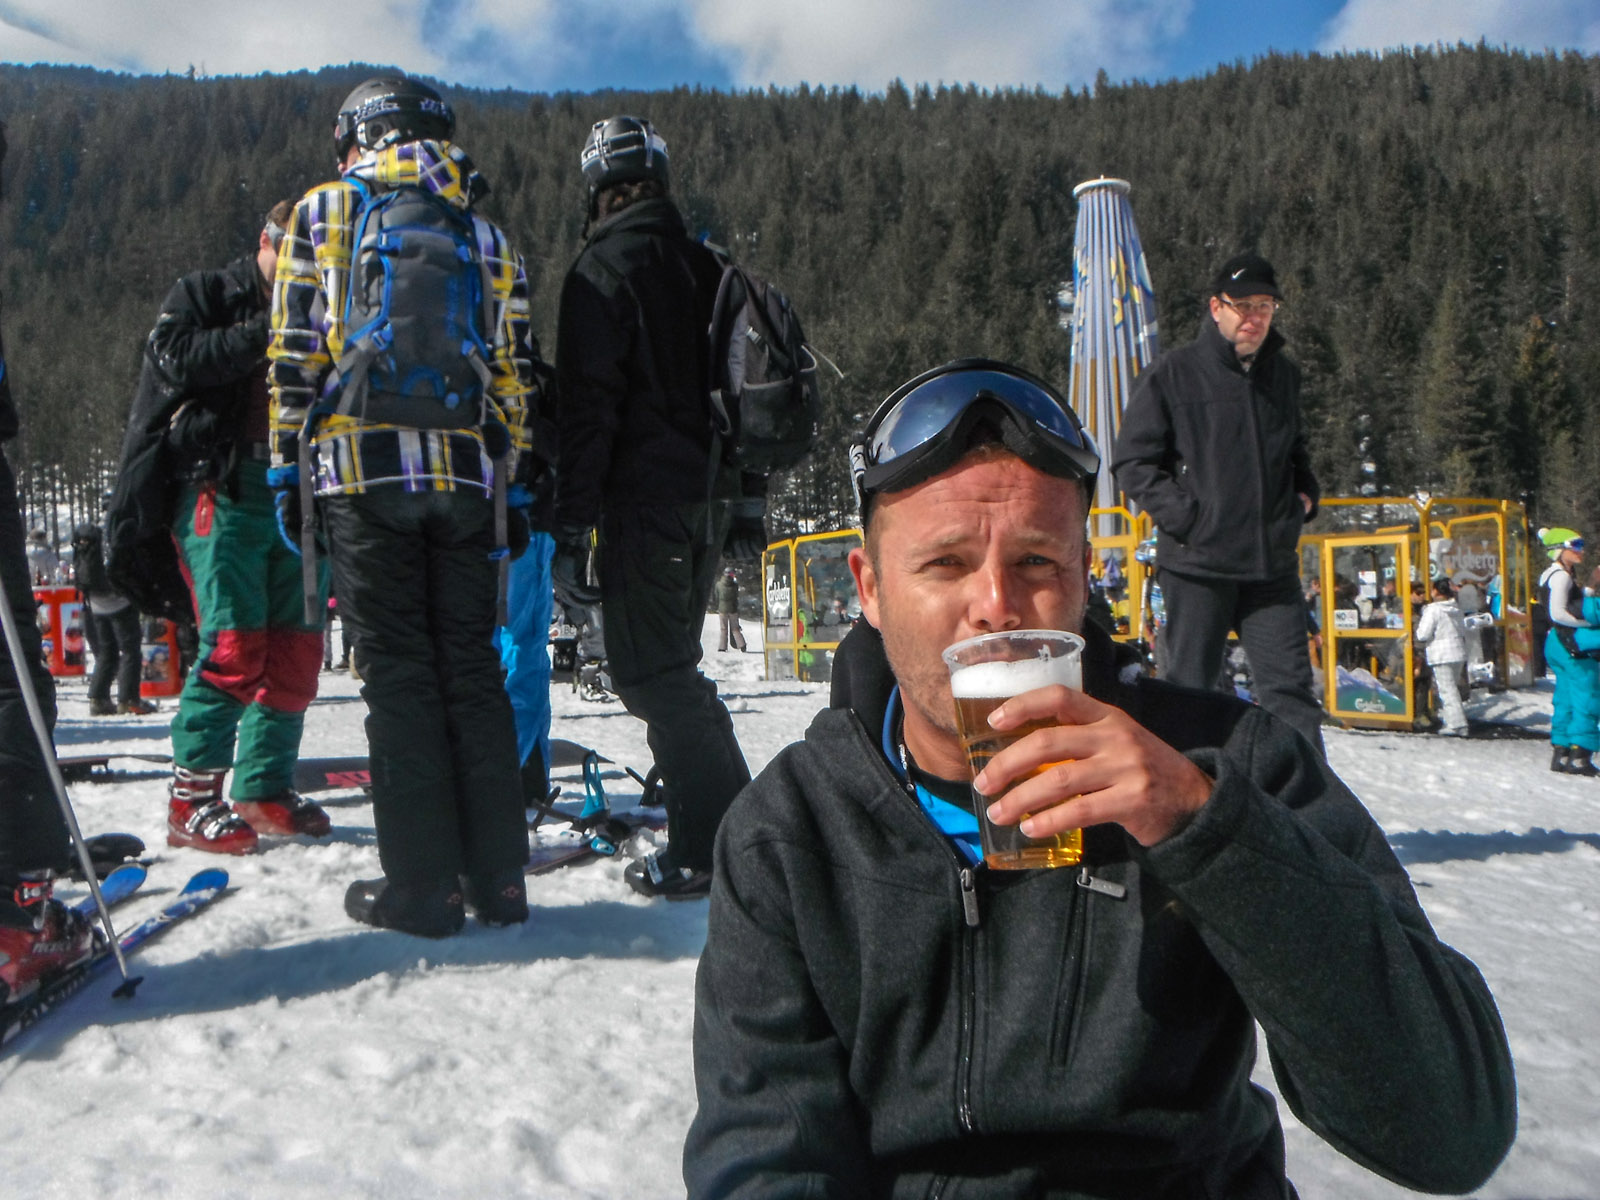 apres-ski-lunch-break-bansko